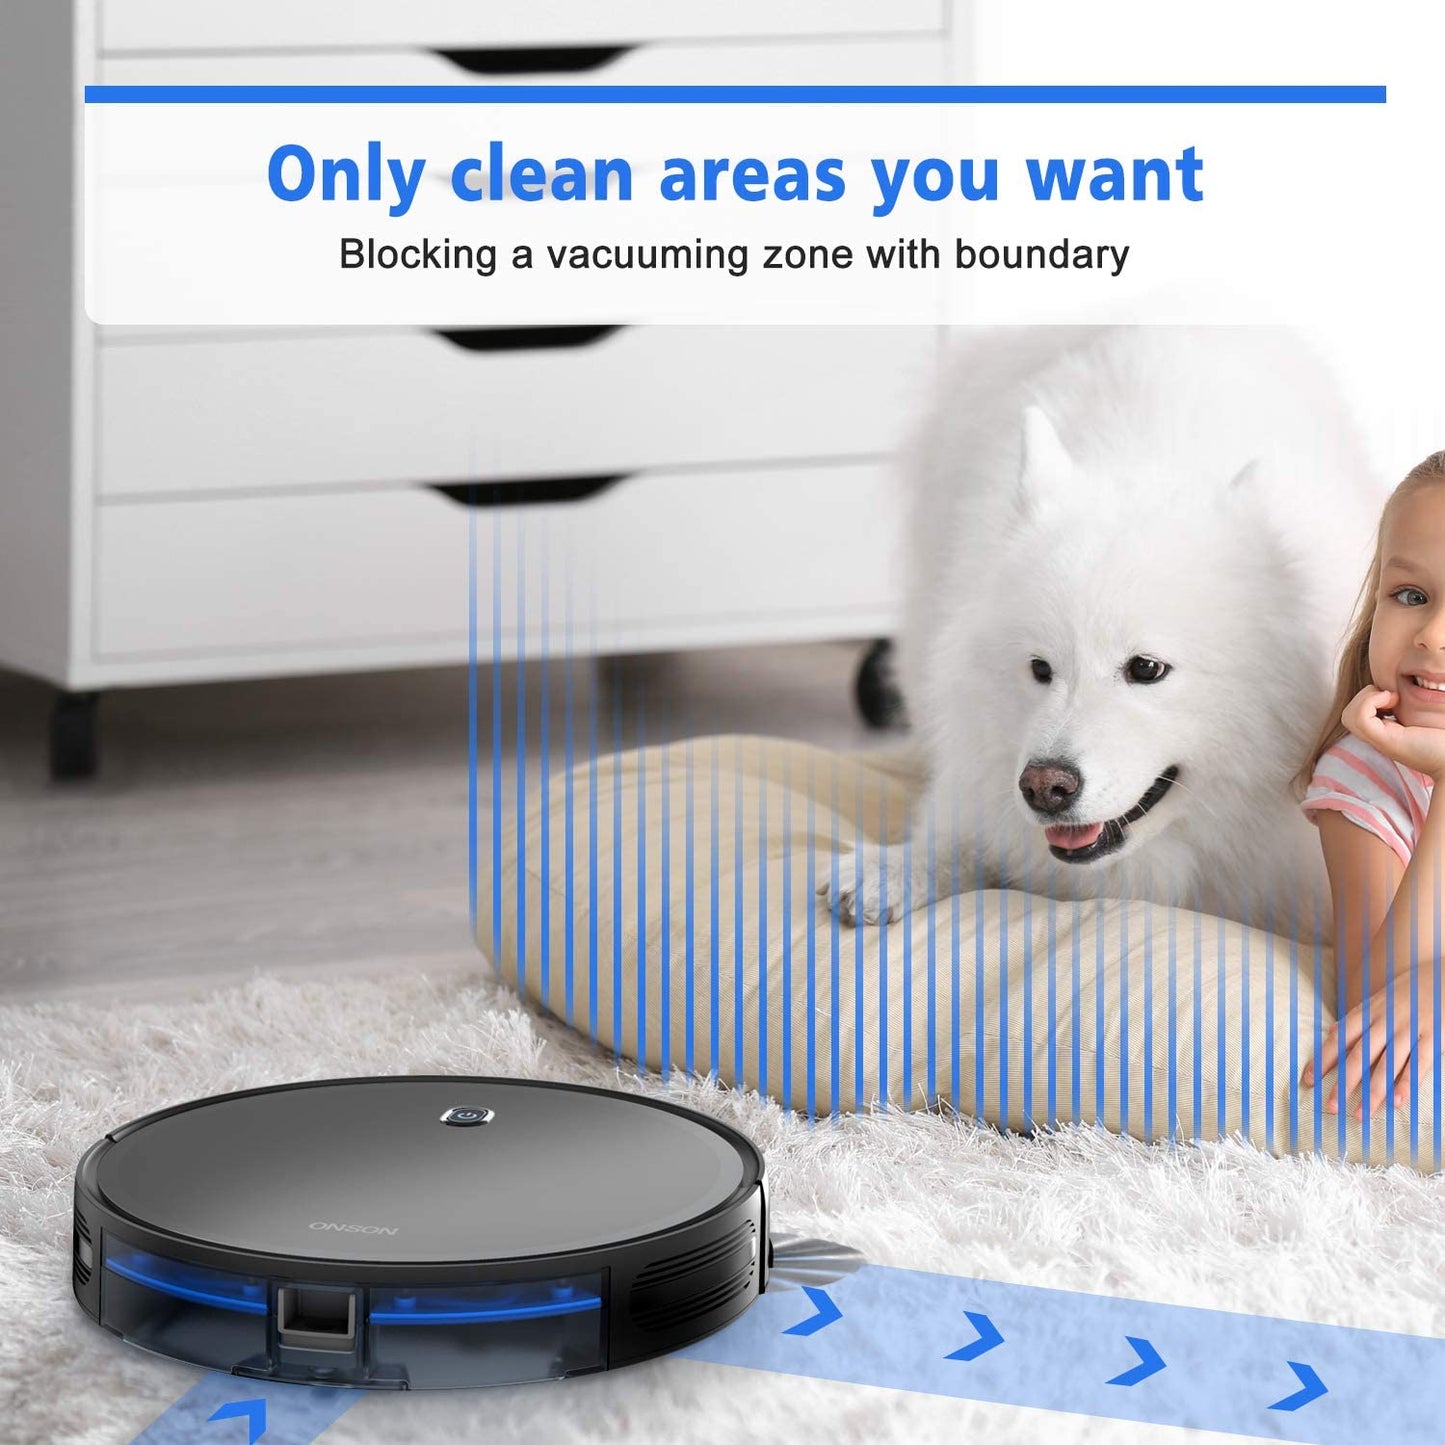 ONSON Hogar Automatico Aspirador de po Robo Limpeza a Seco Proveedores Aspiradora Robot Limpieza Vacuum Cleaner baby magazin 